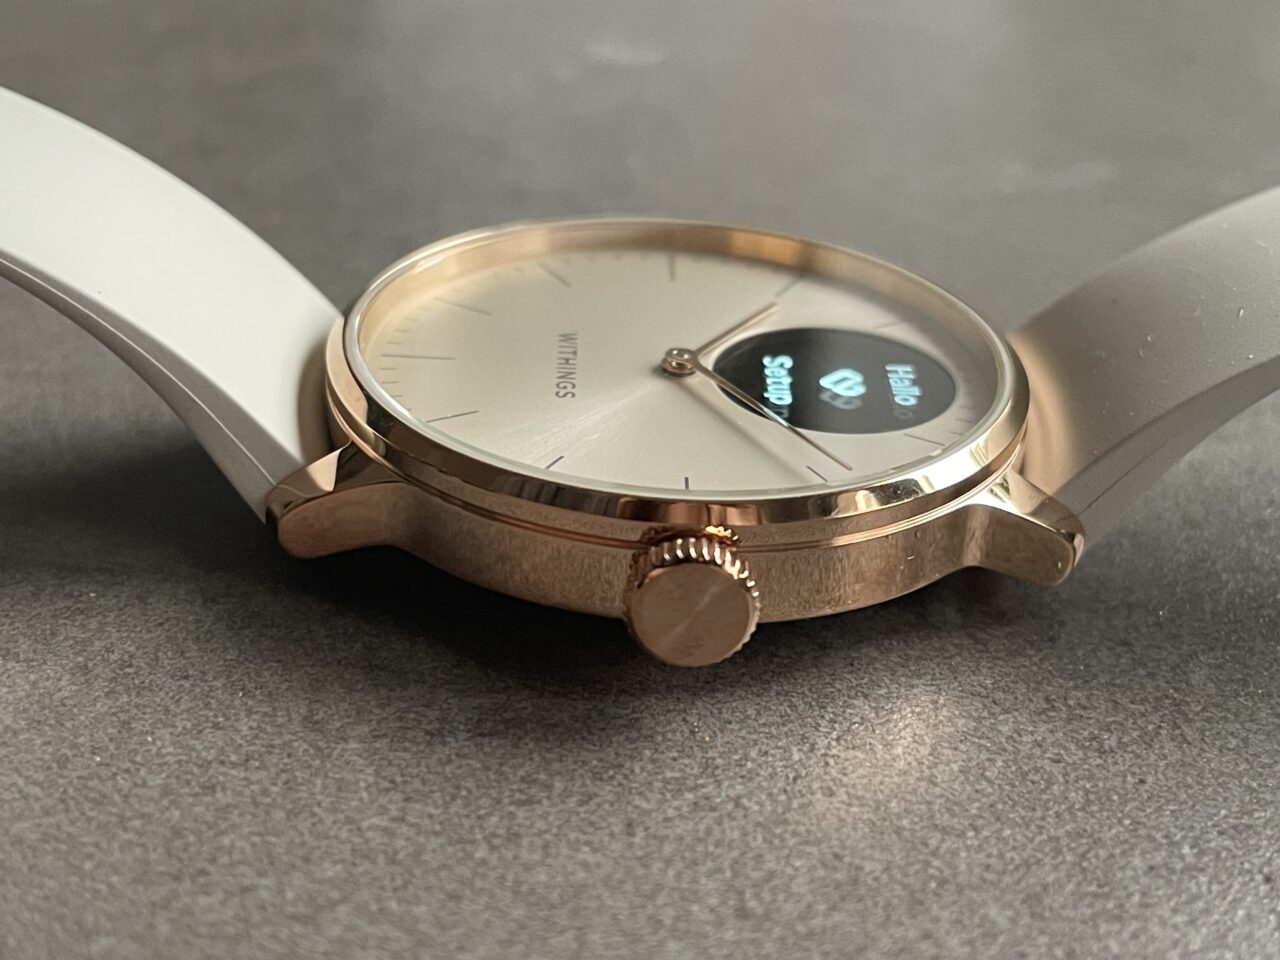 Zegarek na szarym tle z częściowo widoczną tarczą cyfrową i logo na analogowej tarczy, złotą kopertą i białym paskiem.